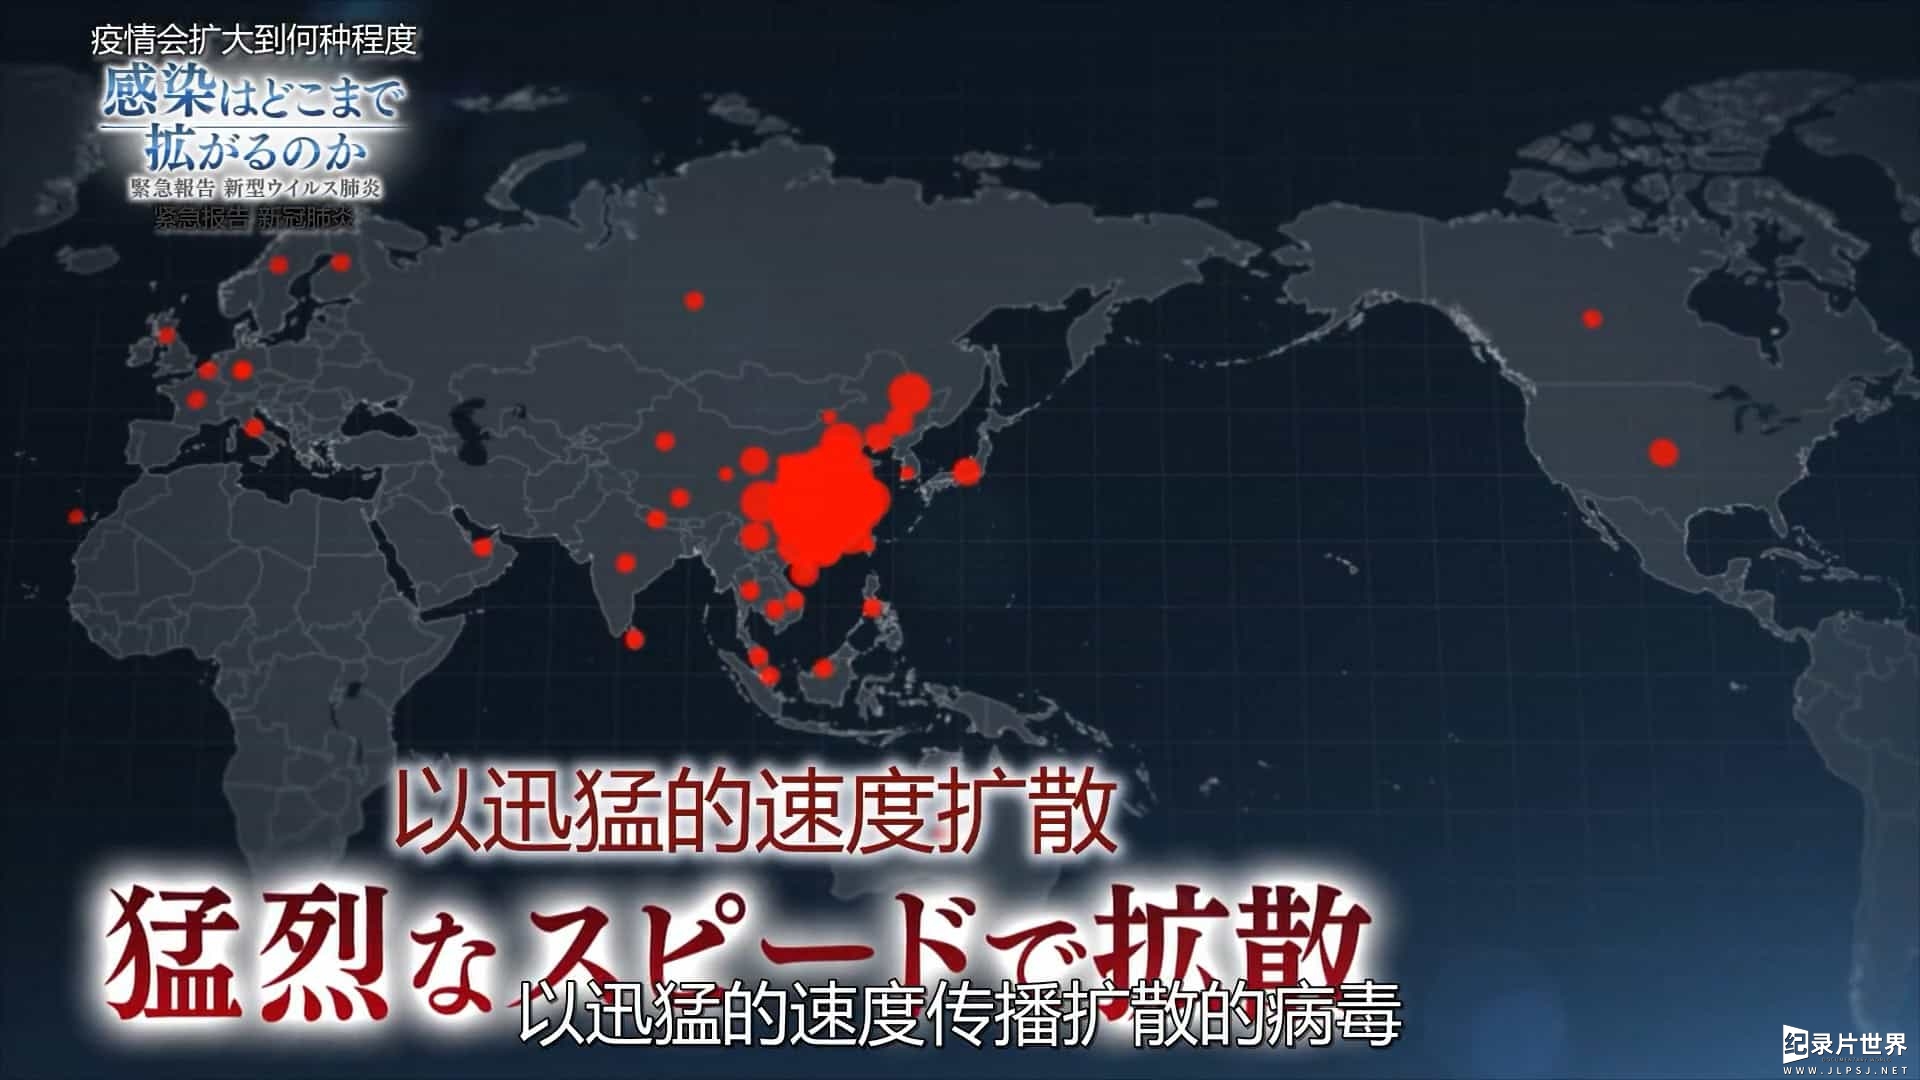 NHK纪录片《疫情会扩大到何种程度 紧急报告新冠肺炎 2020》全1集